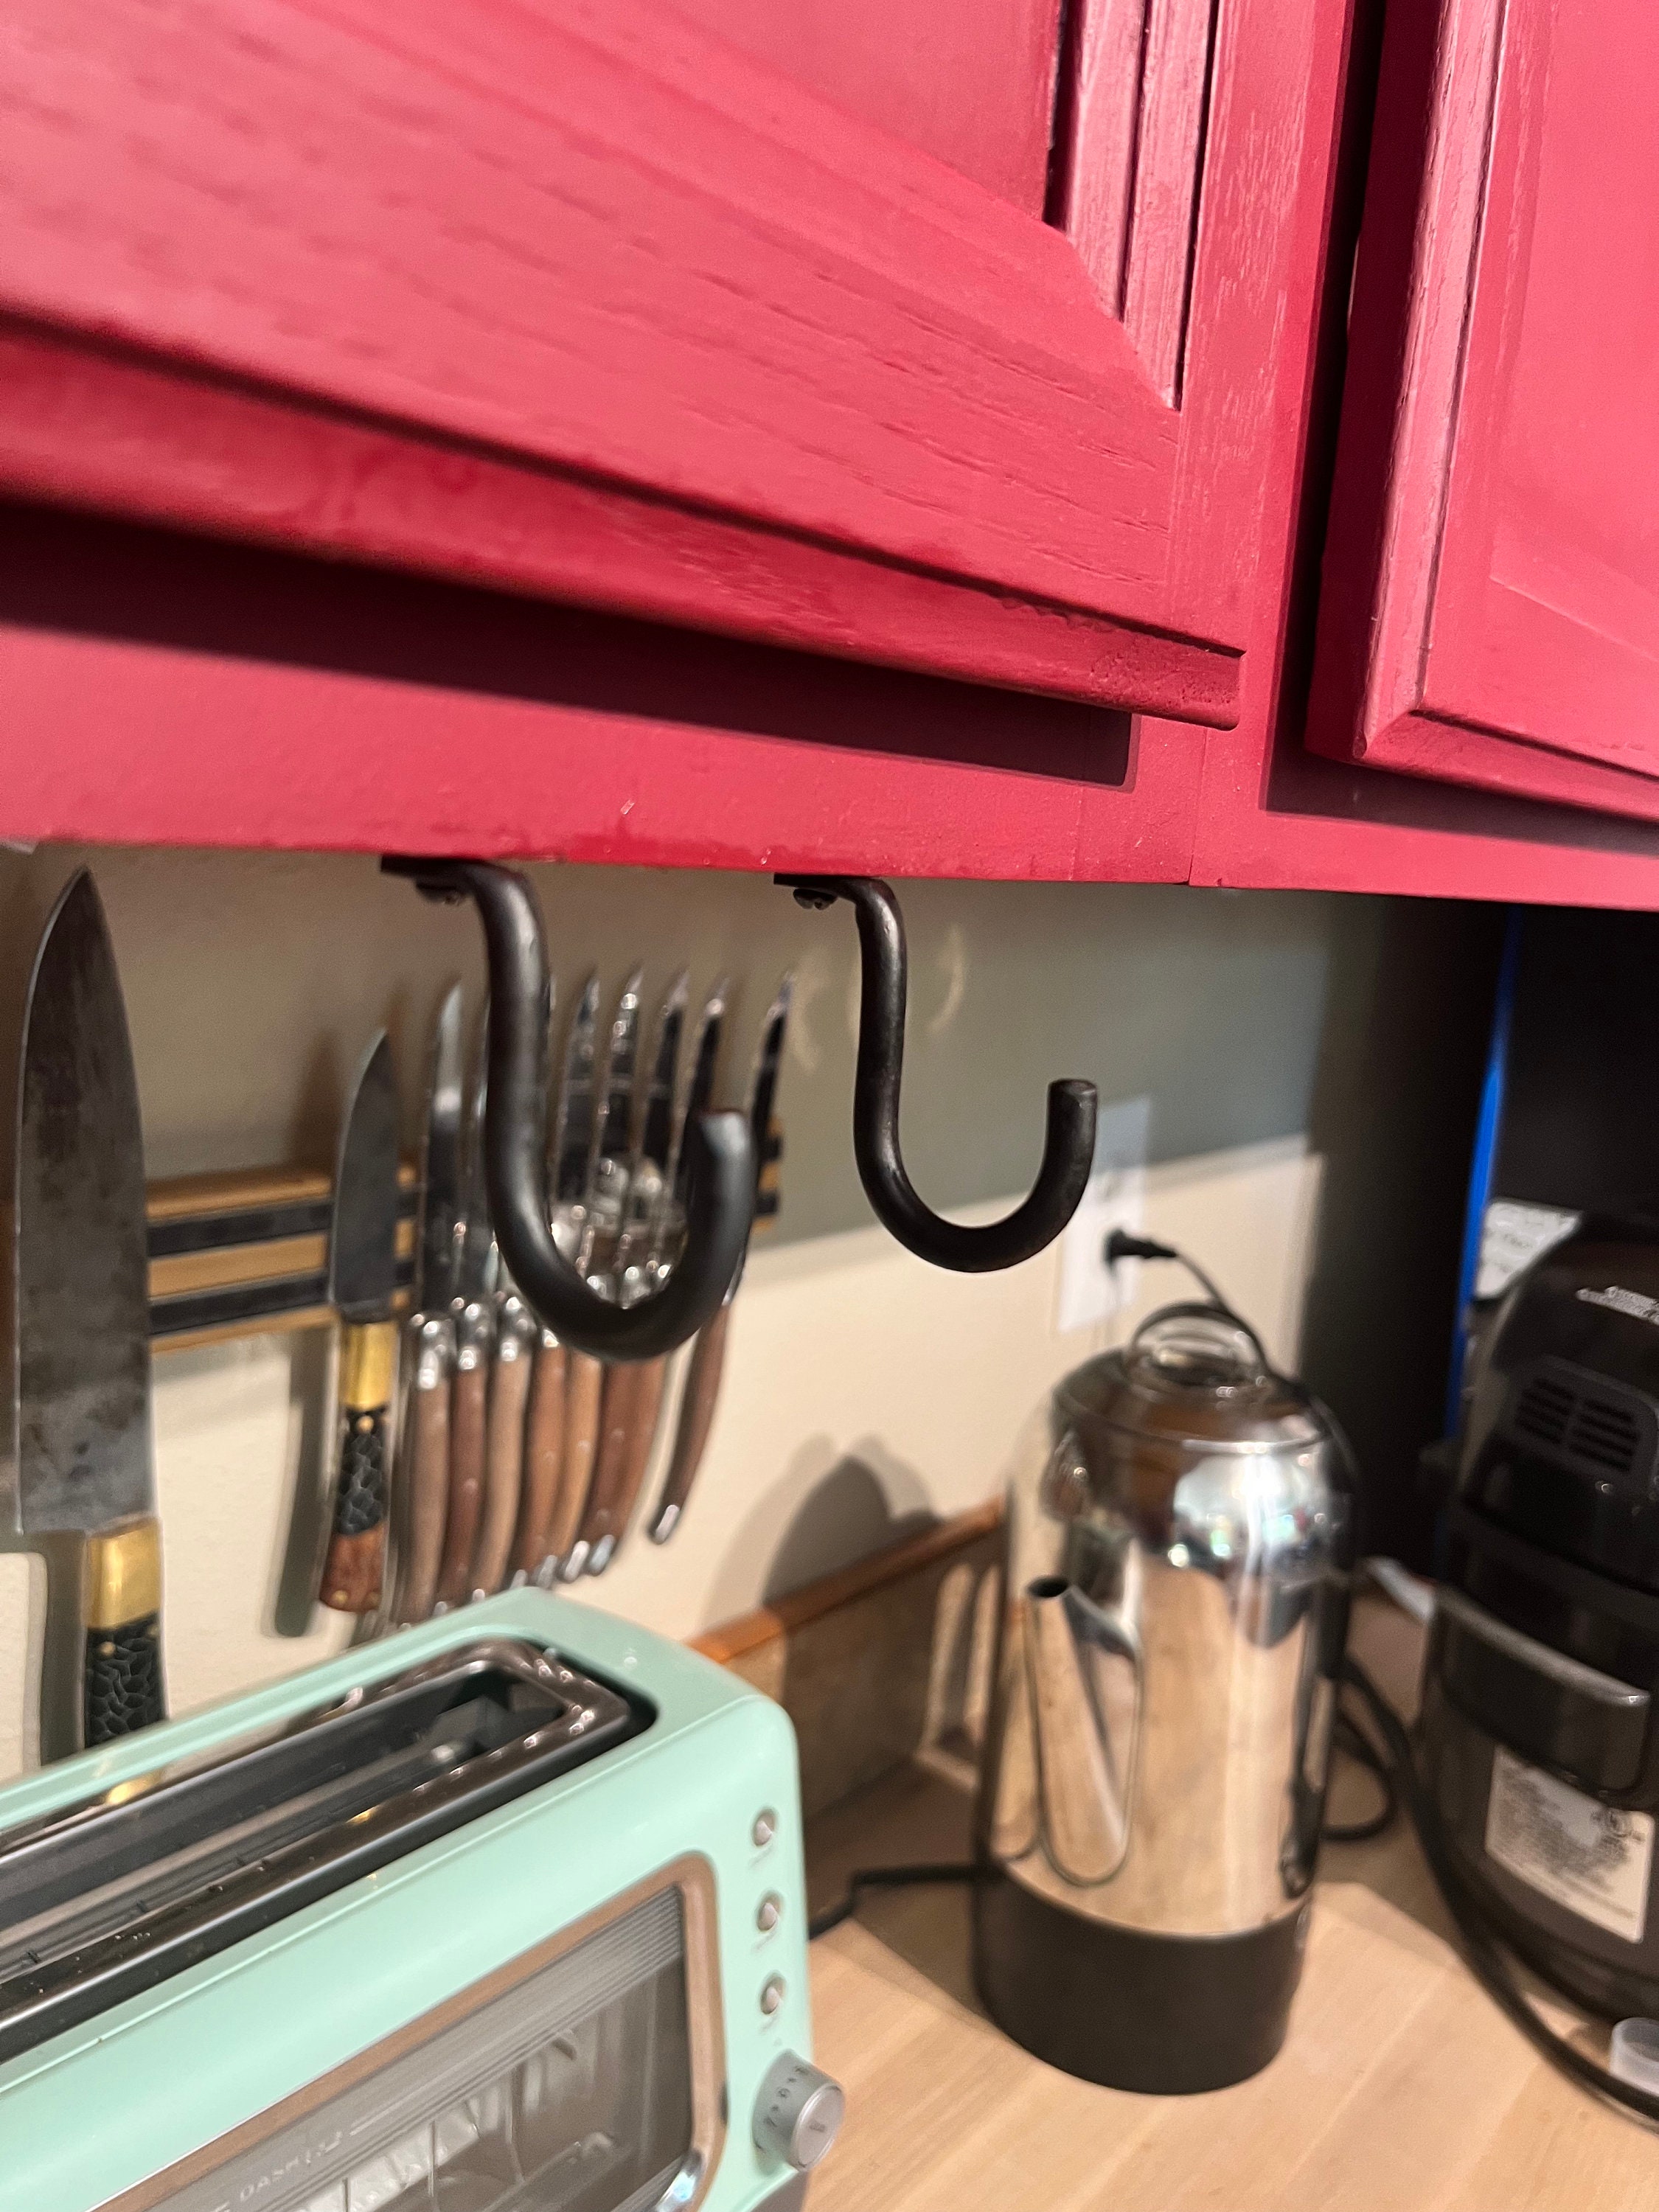 Kitchen Cabinet Baking Pan Storage Organizer – The Steady Hand